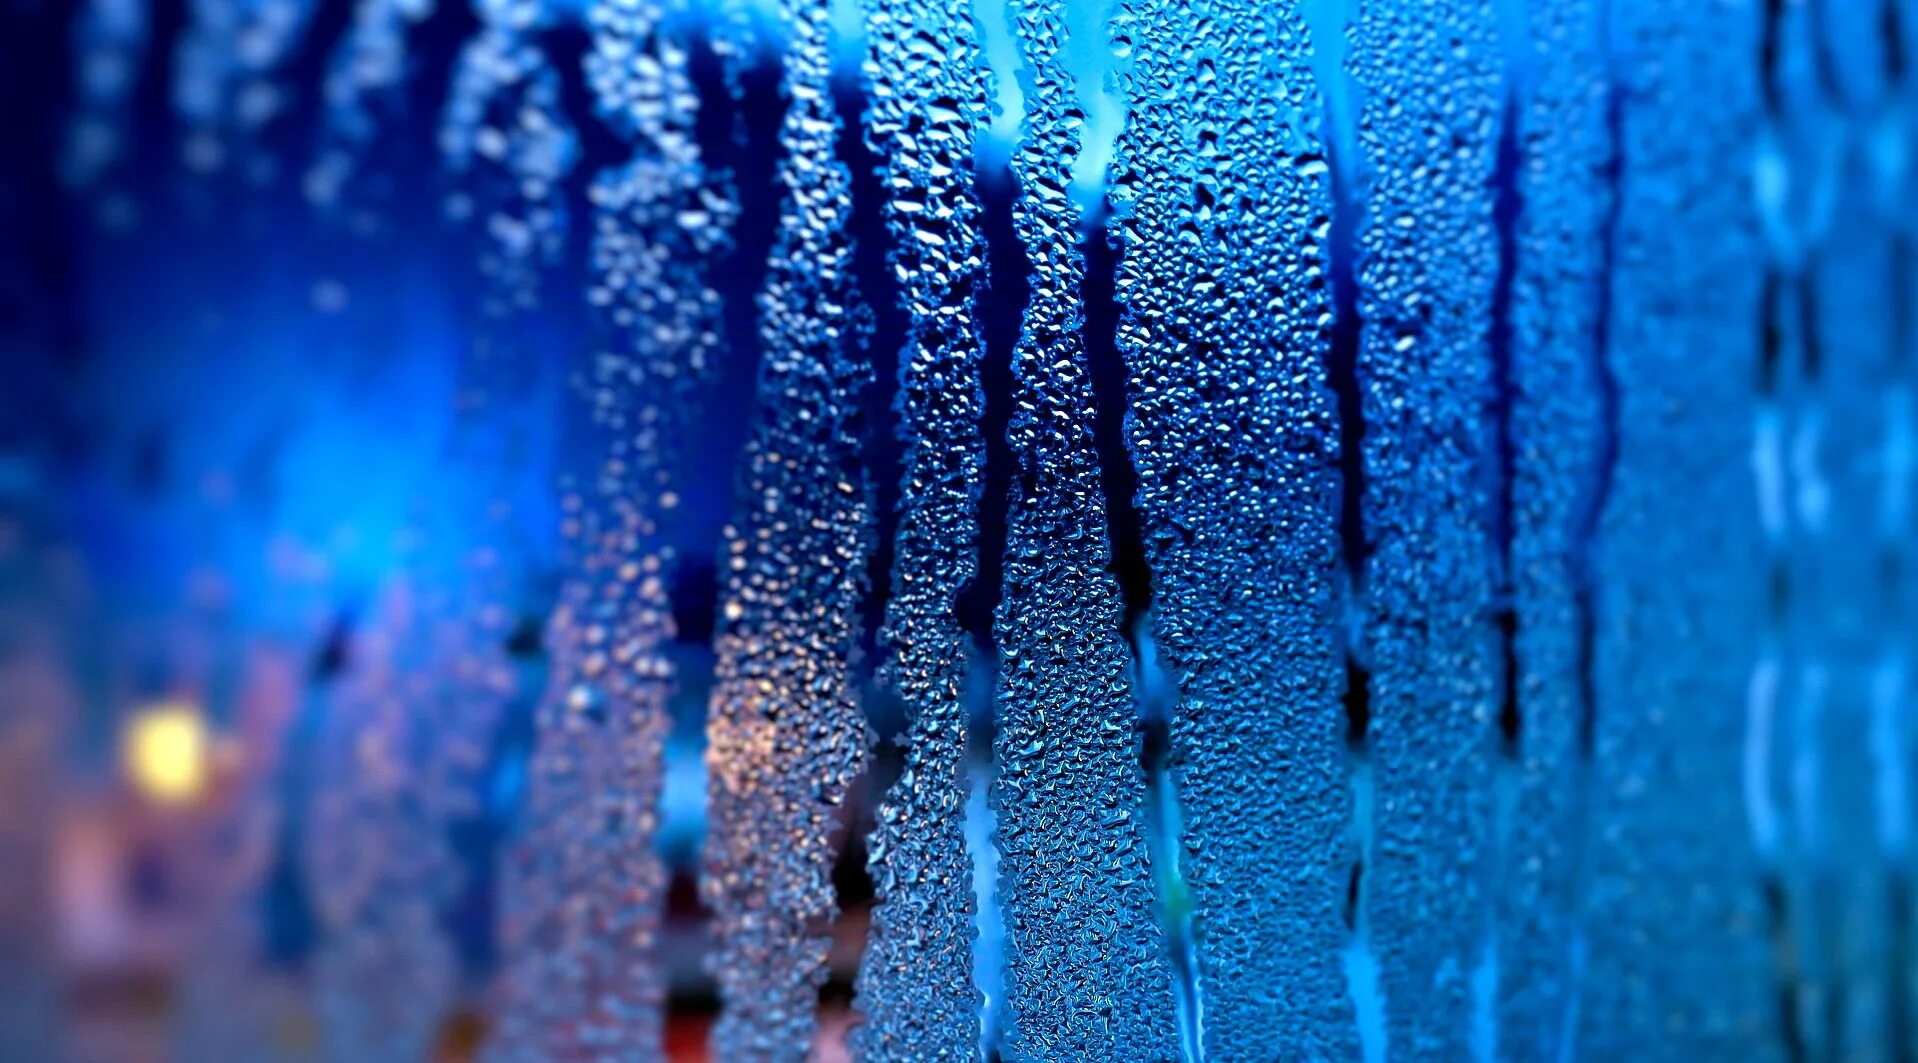 Капли дождя на воде. Капли на стекле. Синий дождь. Текстура стекла. Мокрое стекло.